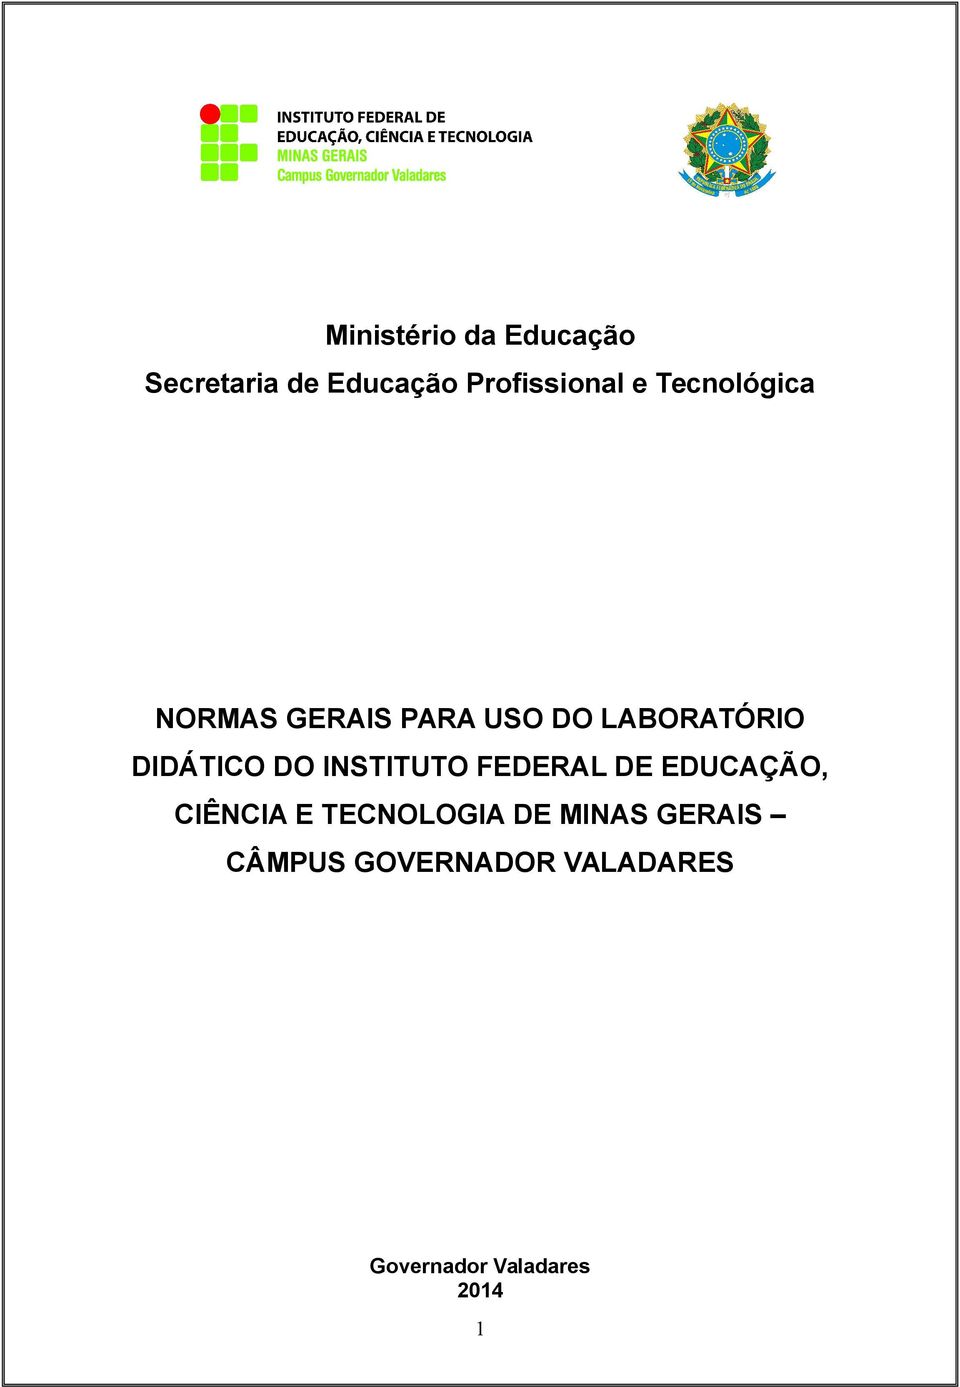 INSTITUTO FEDERAL DE EDUCAÇÃO, CIÊNCIA E TECNOLOGIA DE MINAS